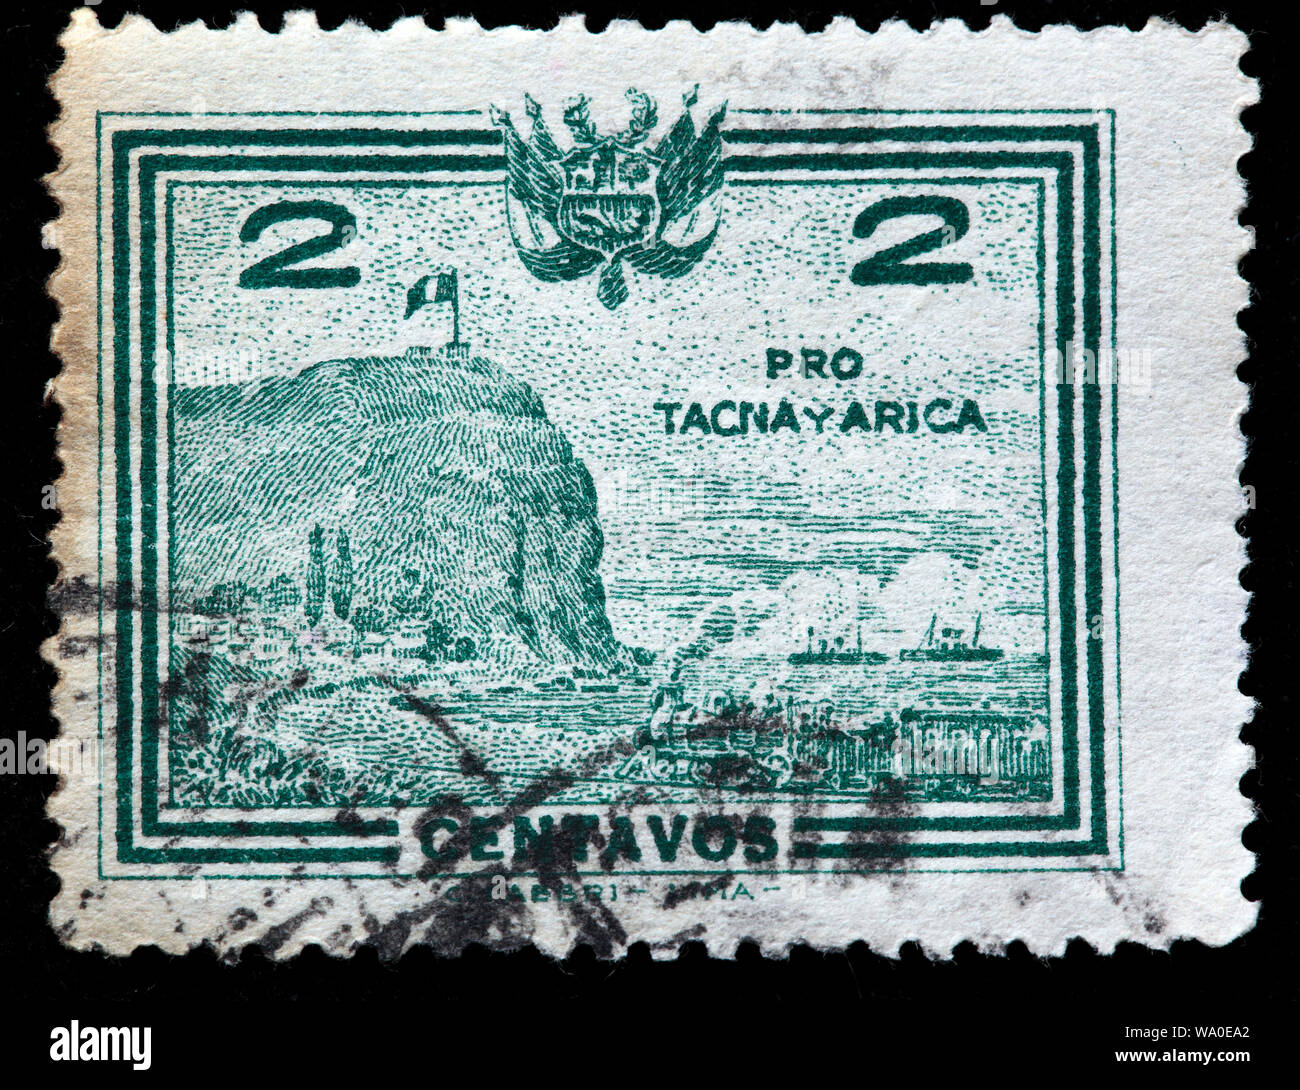 Plebiscite, Pro Tacna and Arica, postage stamp, Peru, 1927 Stock Photo